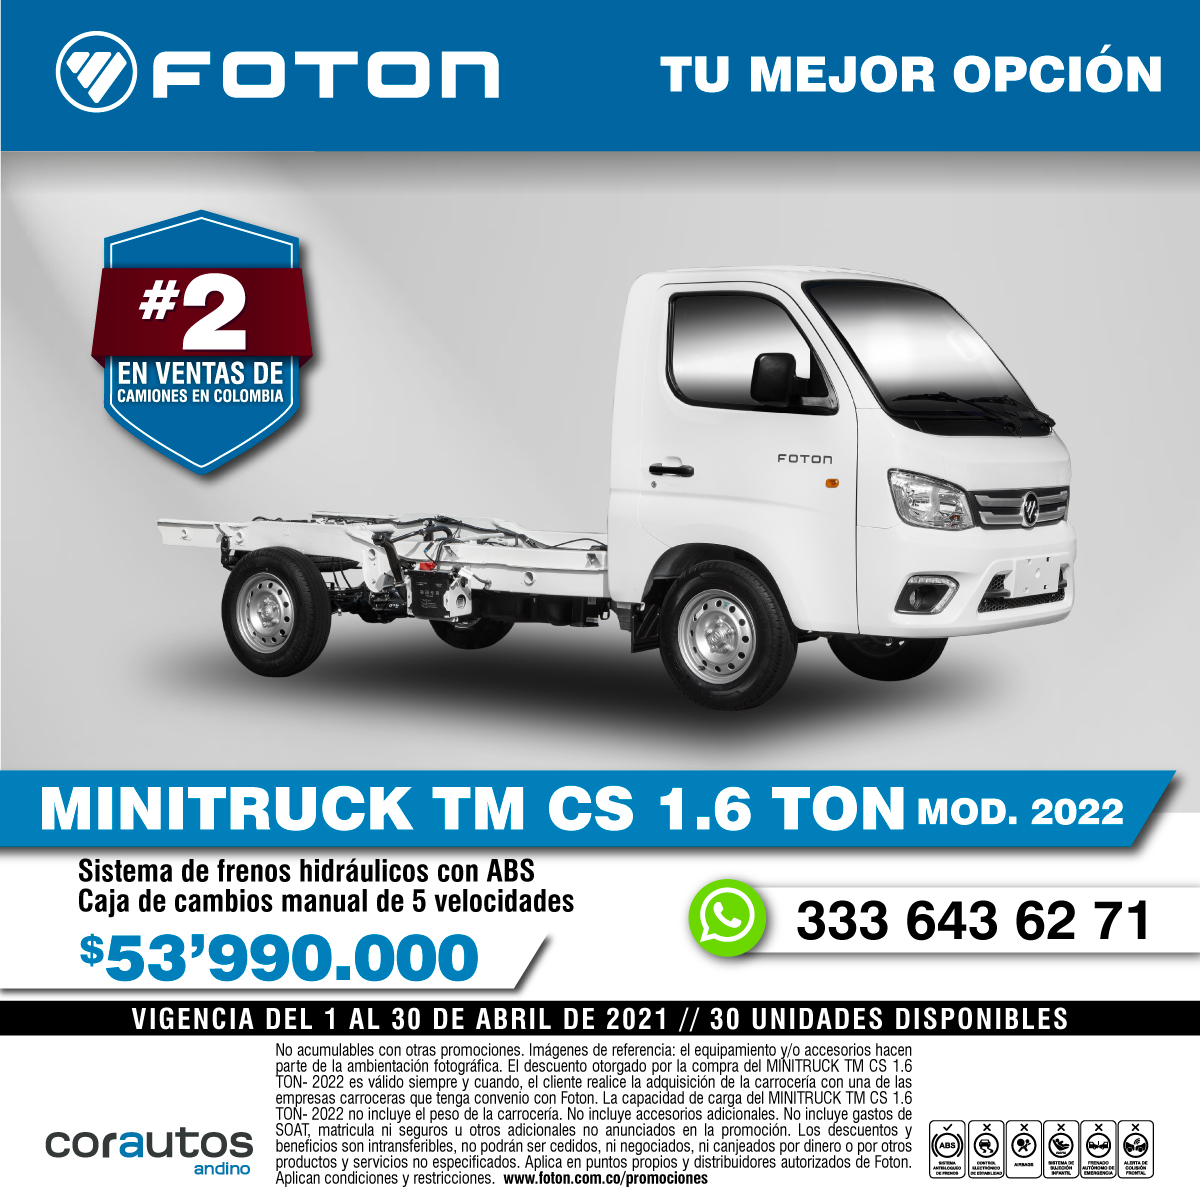 Minitruck TM CS 1.6 TON. $53.990.000.